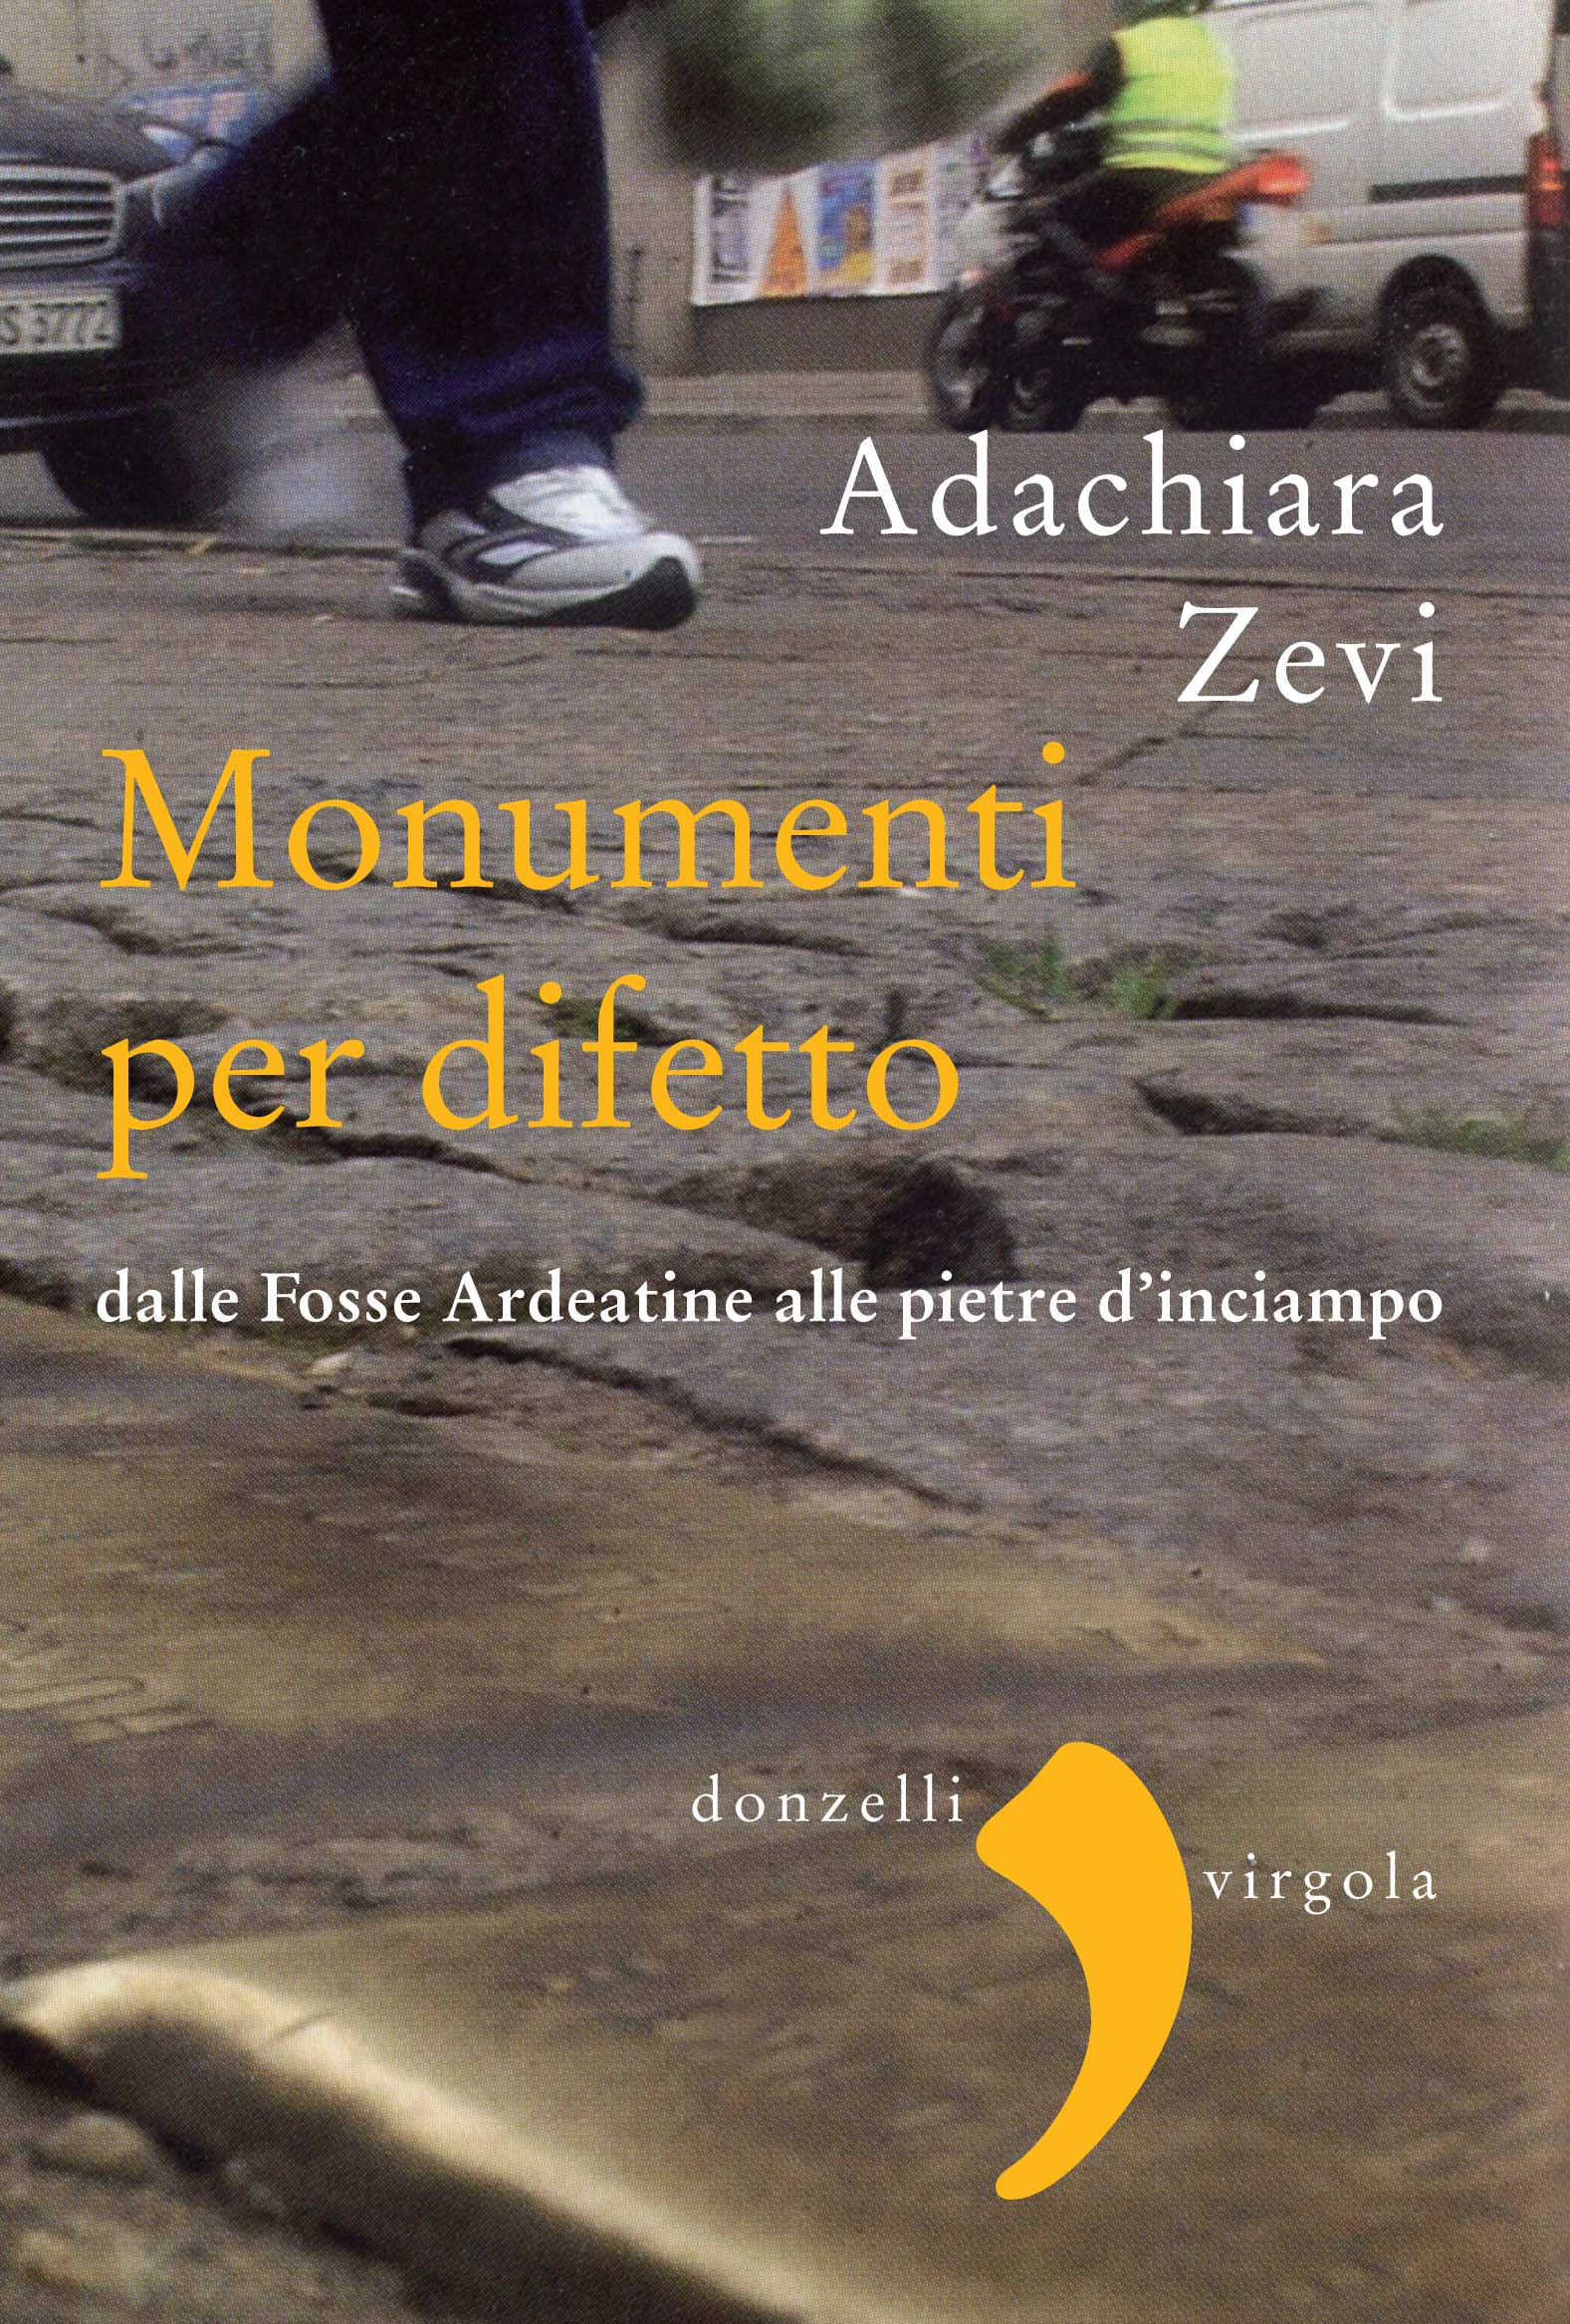 Adachiara Zevi - Monumenti per difetto - Donzelli